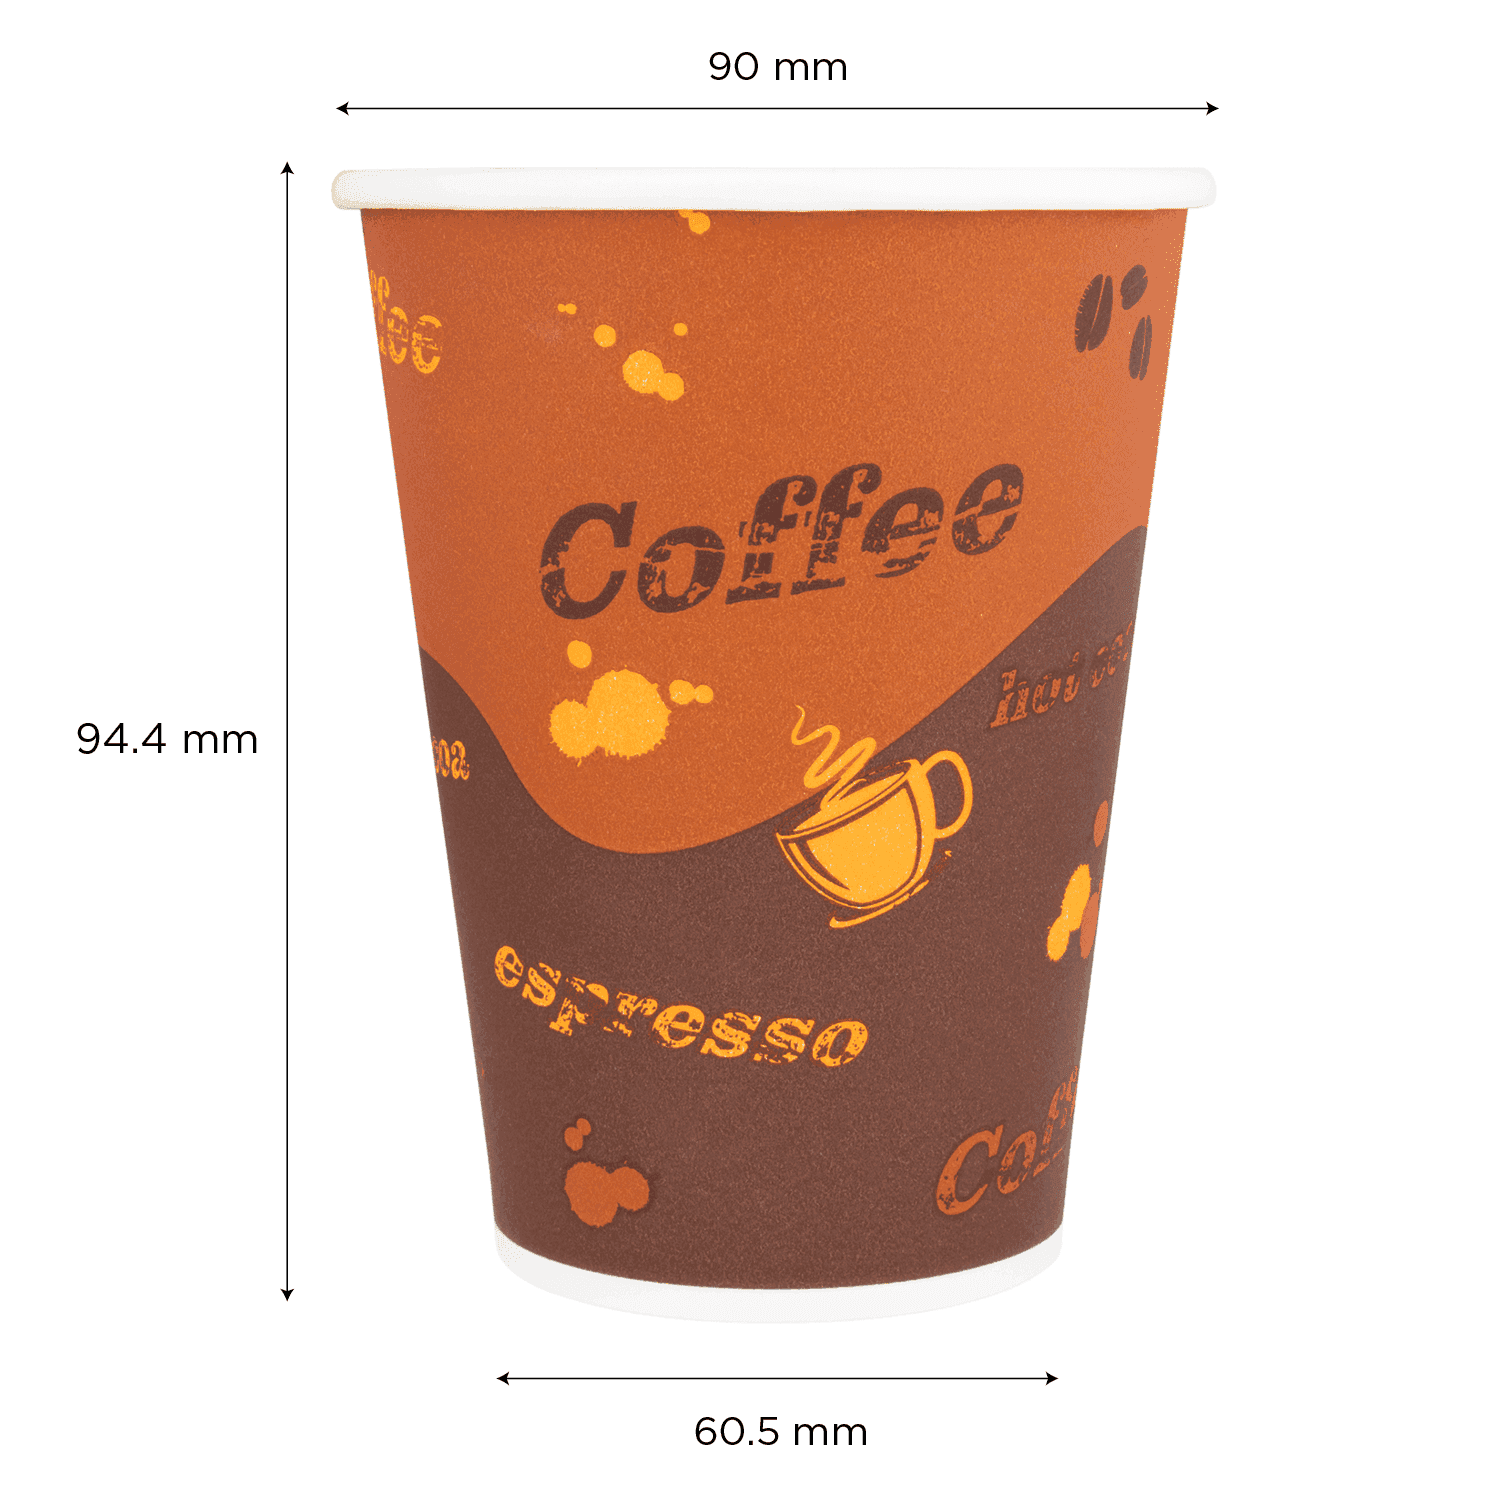 Karat 12oz Paper Hot Cups (90mm), Coffee Print  - 1,000 pcs